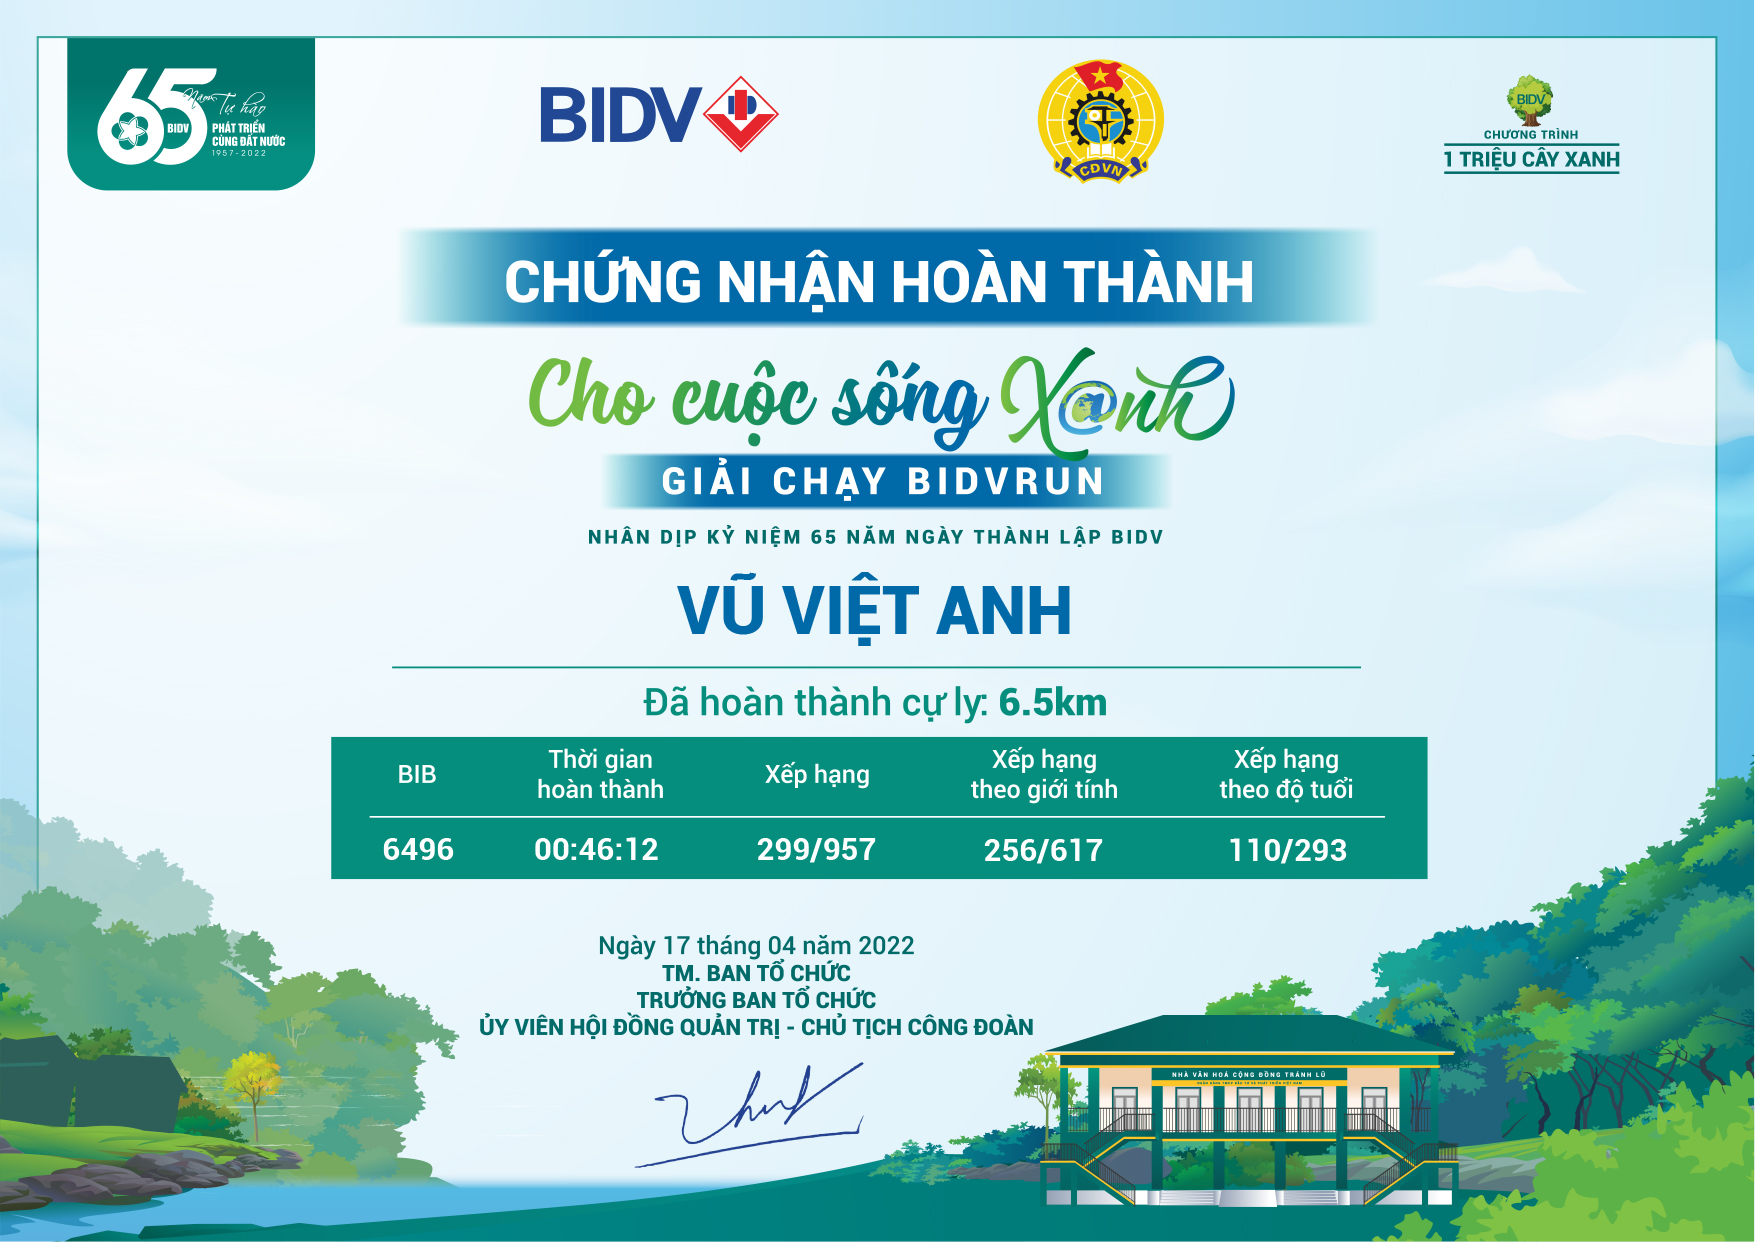 6496 - Vũ Việt Anh